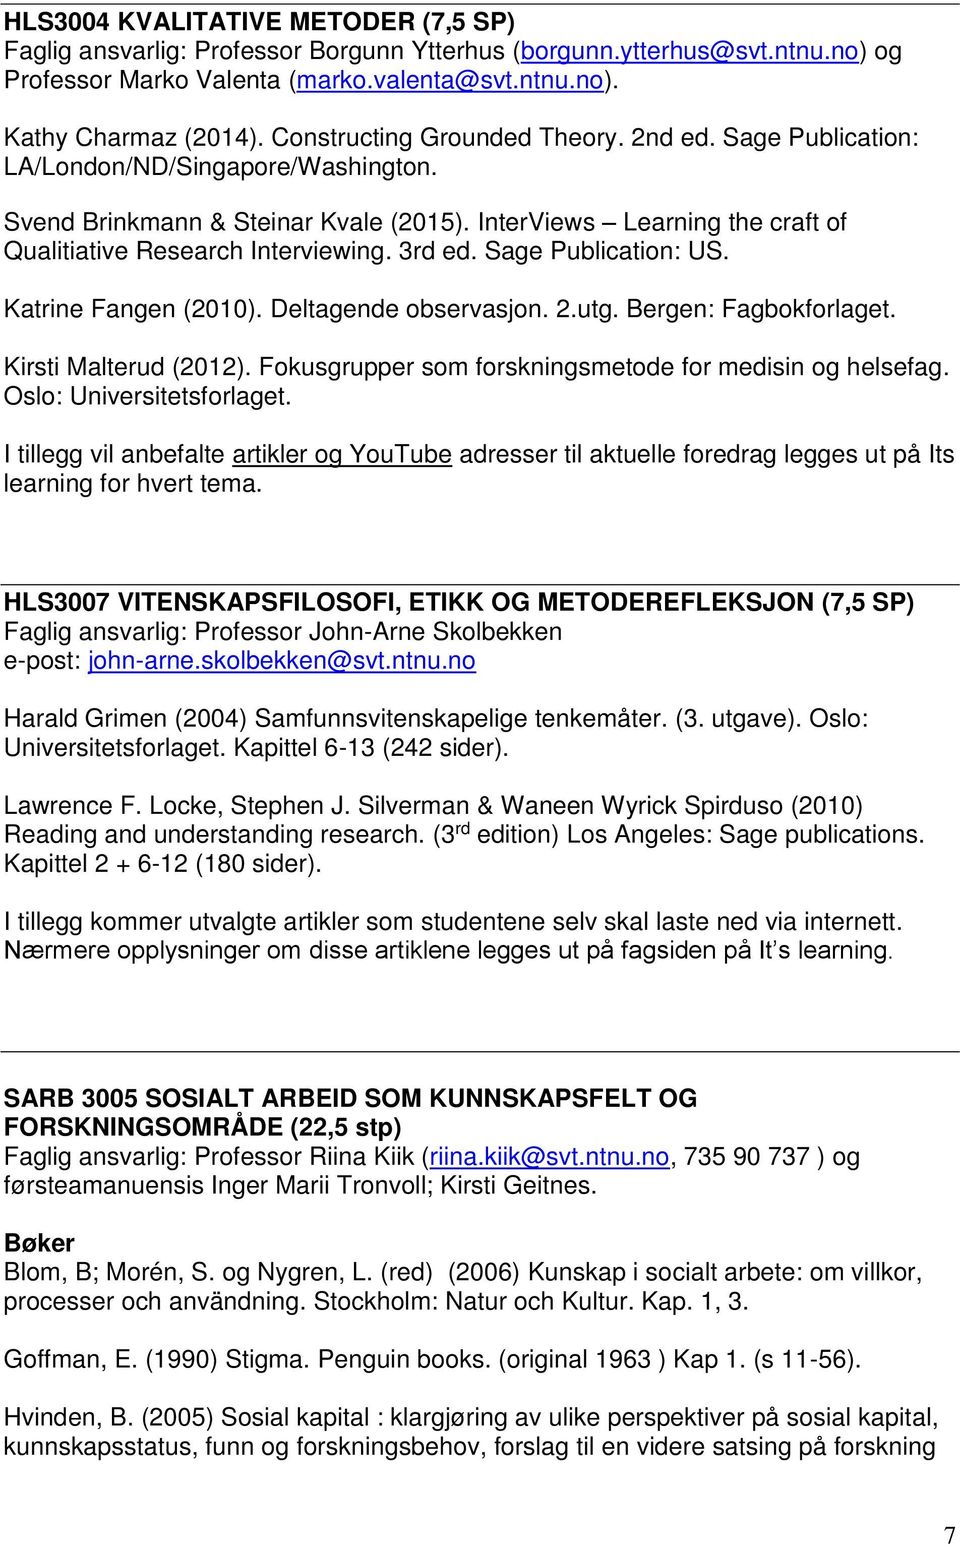 3rd ed. Sage Publication: US. Katrine Fangen (2010). Deltagende observasjon. 2.utg. Bergen: Fagbokforlaget. Kirsti Malterud (2012). Fokusgrupper som forskningsmetode for medisin og helsefag.